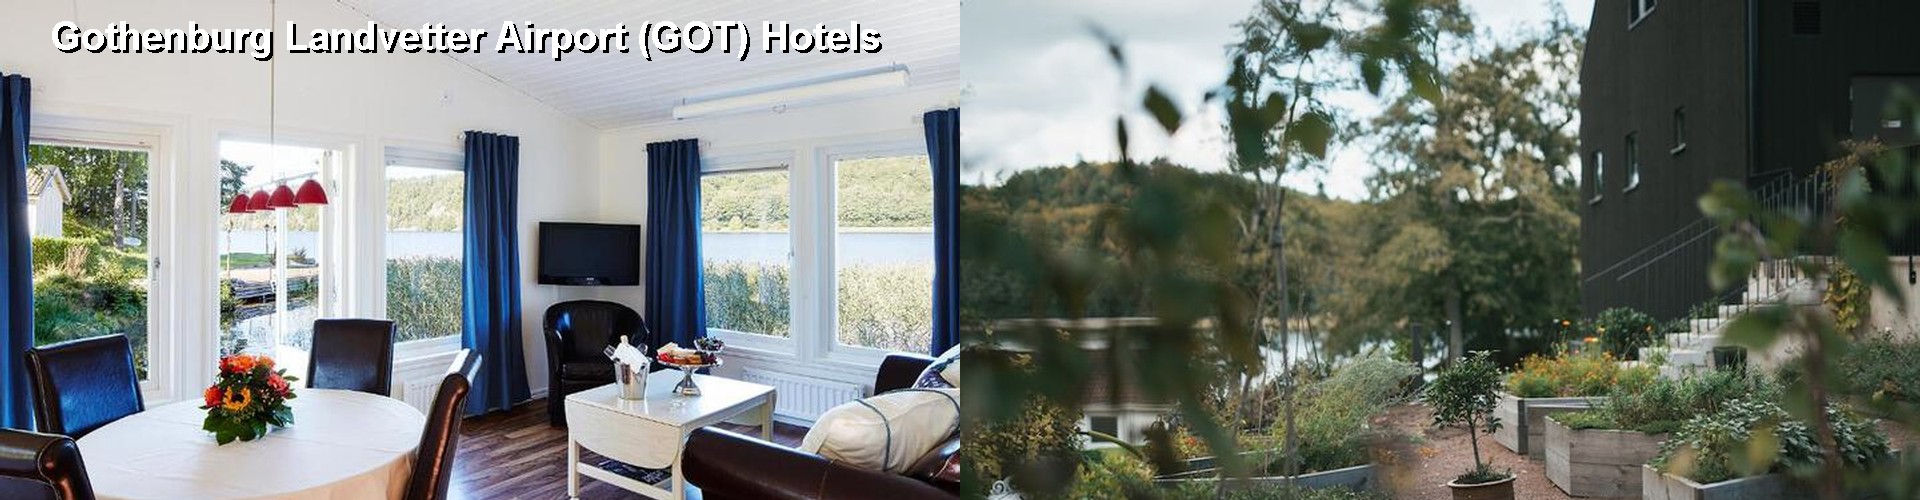 5 Best Hotels near Gothenburg Landvetter Airport (GOT)